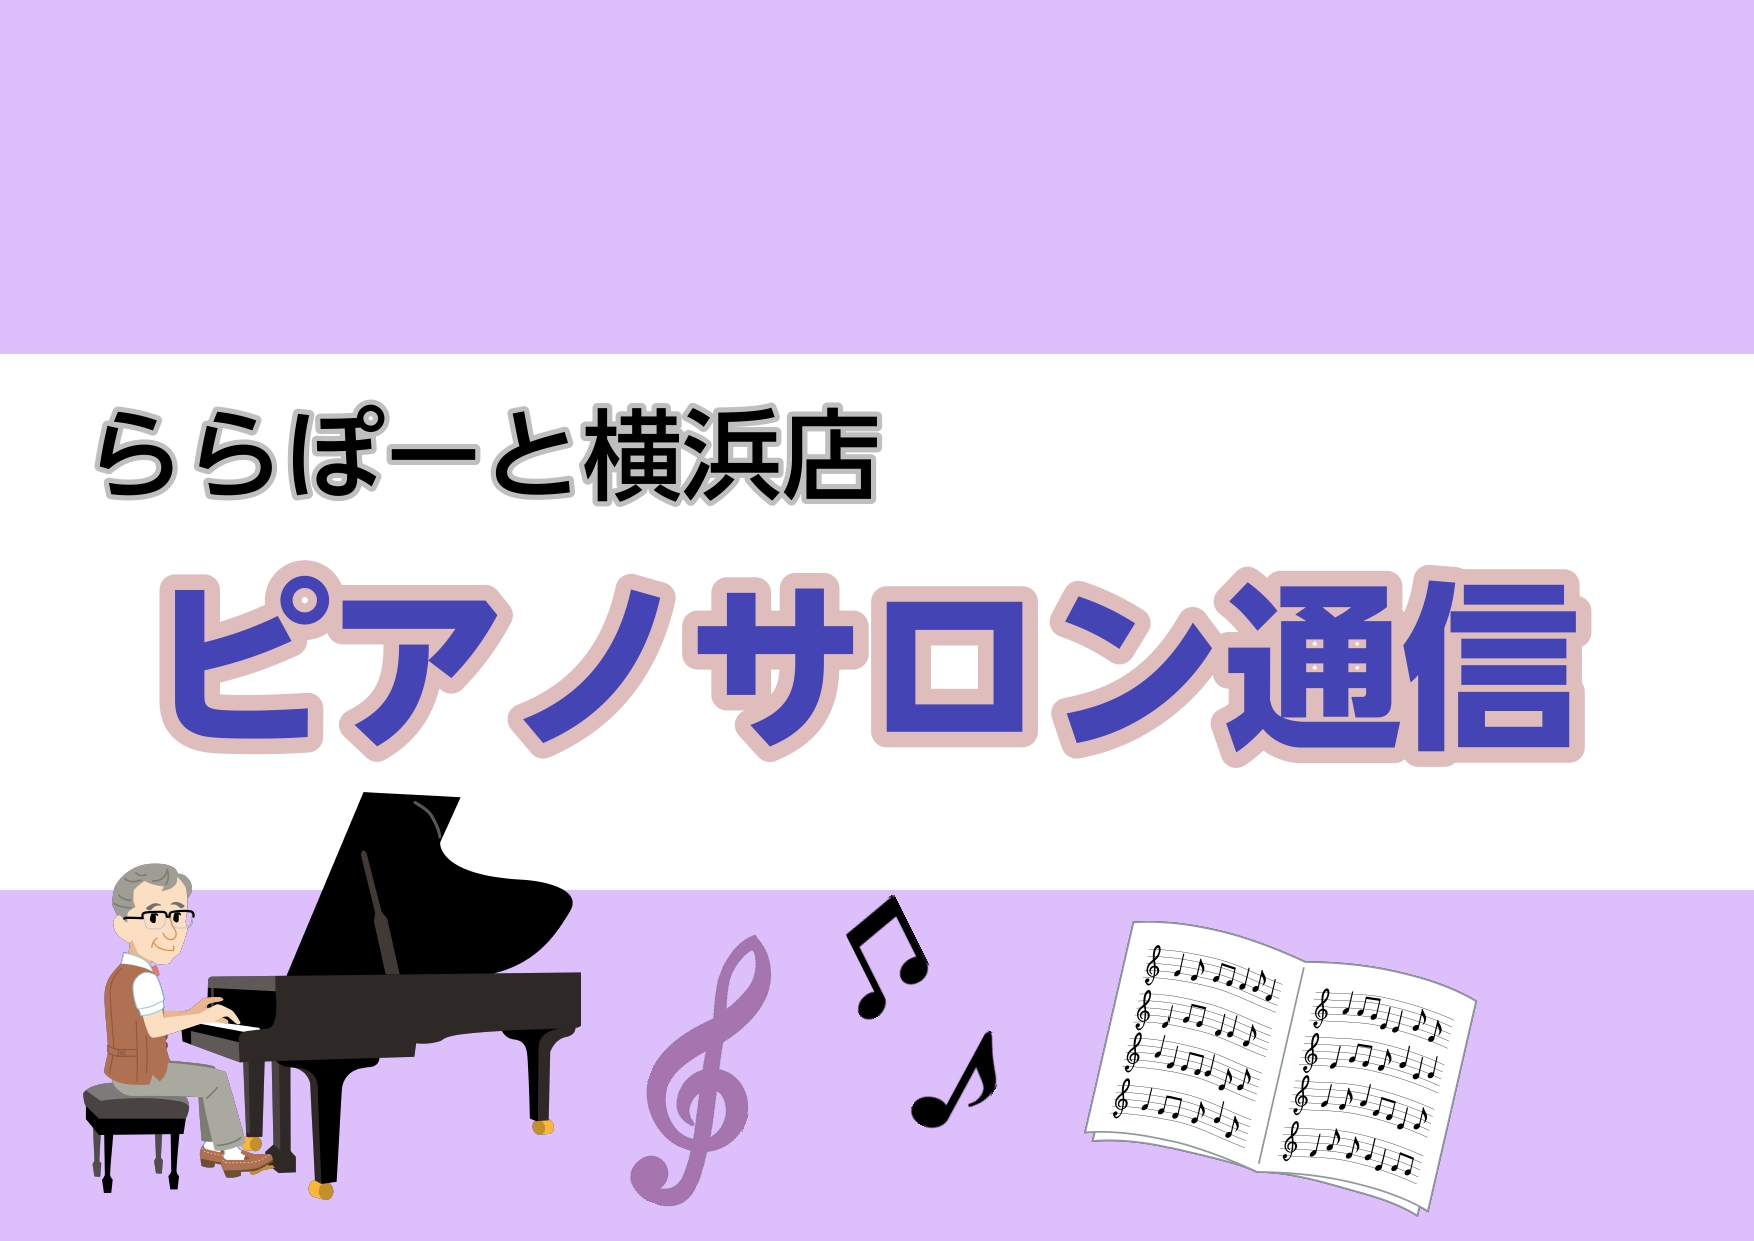 CONTENTS9月ピアノサロンスケジュールらら☆コンサート開催のお知らせ♪サポートアプリ「島村楽器 音楽日記」について9月ピアノサロンスケジュール ※9月28日㈭、9月29日㈮は、研修のため予約可能時間に変更がございます。詳しくは教室マイページをご覧下さい。 らら☆コンサート開催のお知らせ♪ 毎年 […]